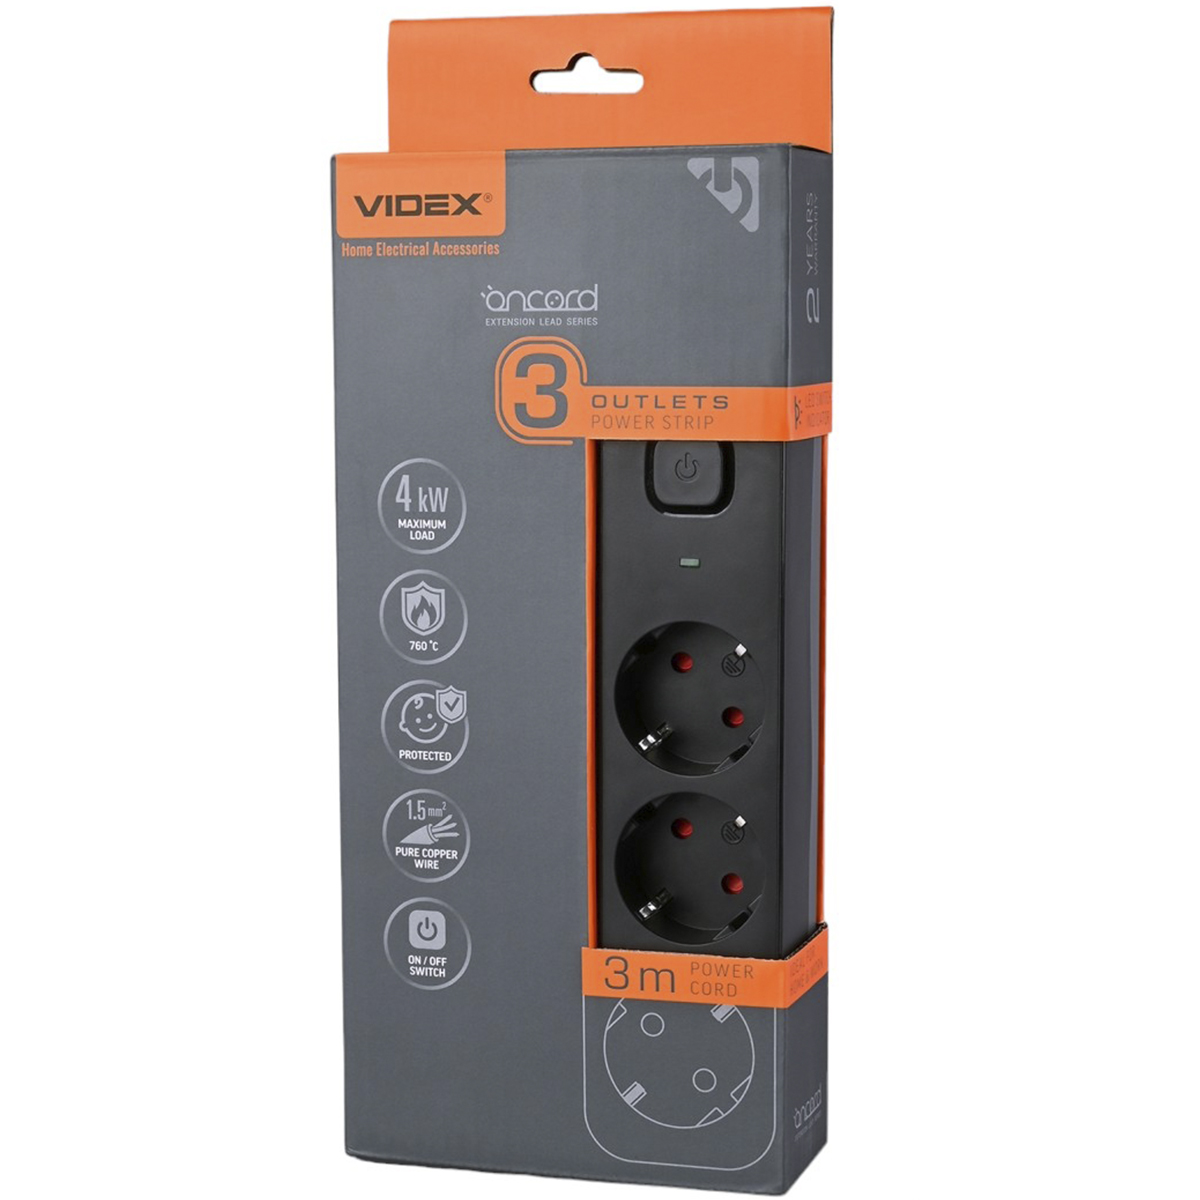 Мережевий подовжувач Videx Oncord з кнопкою з/з 3п 3 м 3x1.5 мм black (VF-PD33G-B) - фото 1